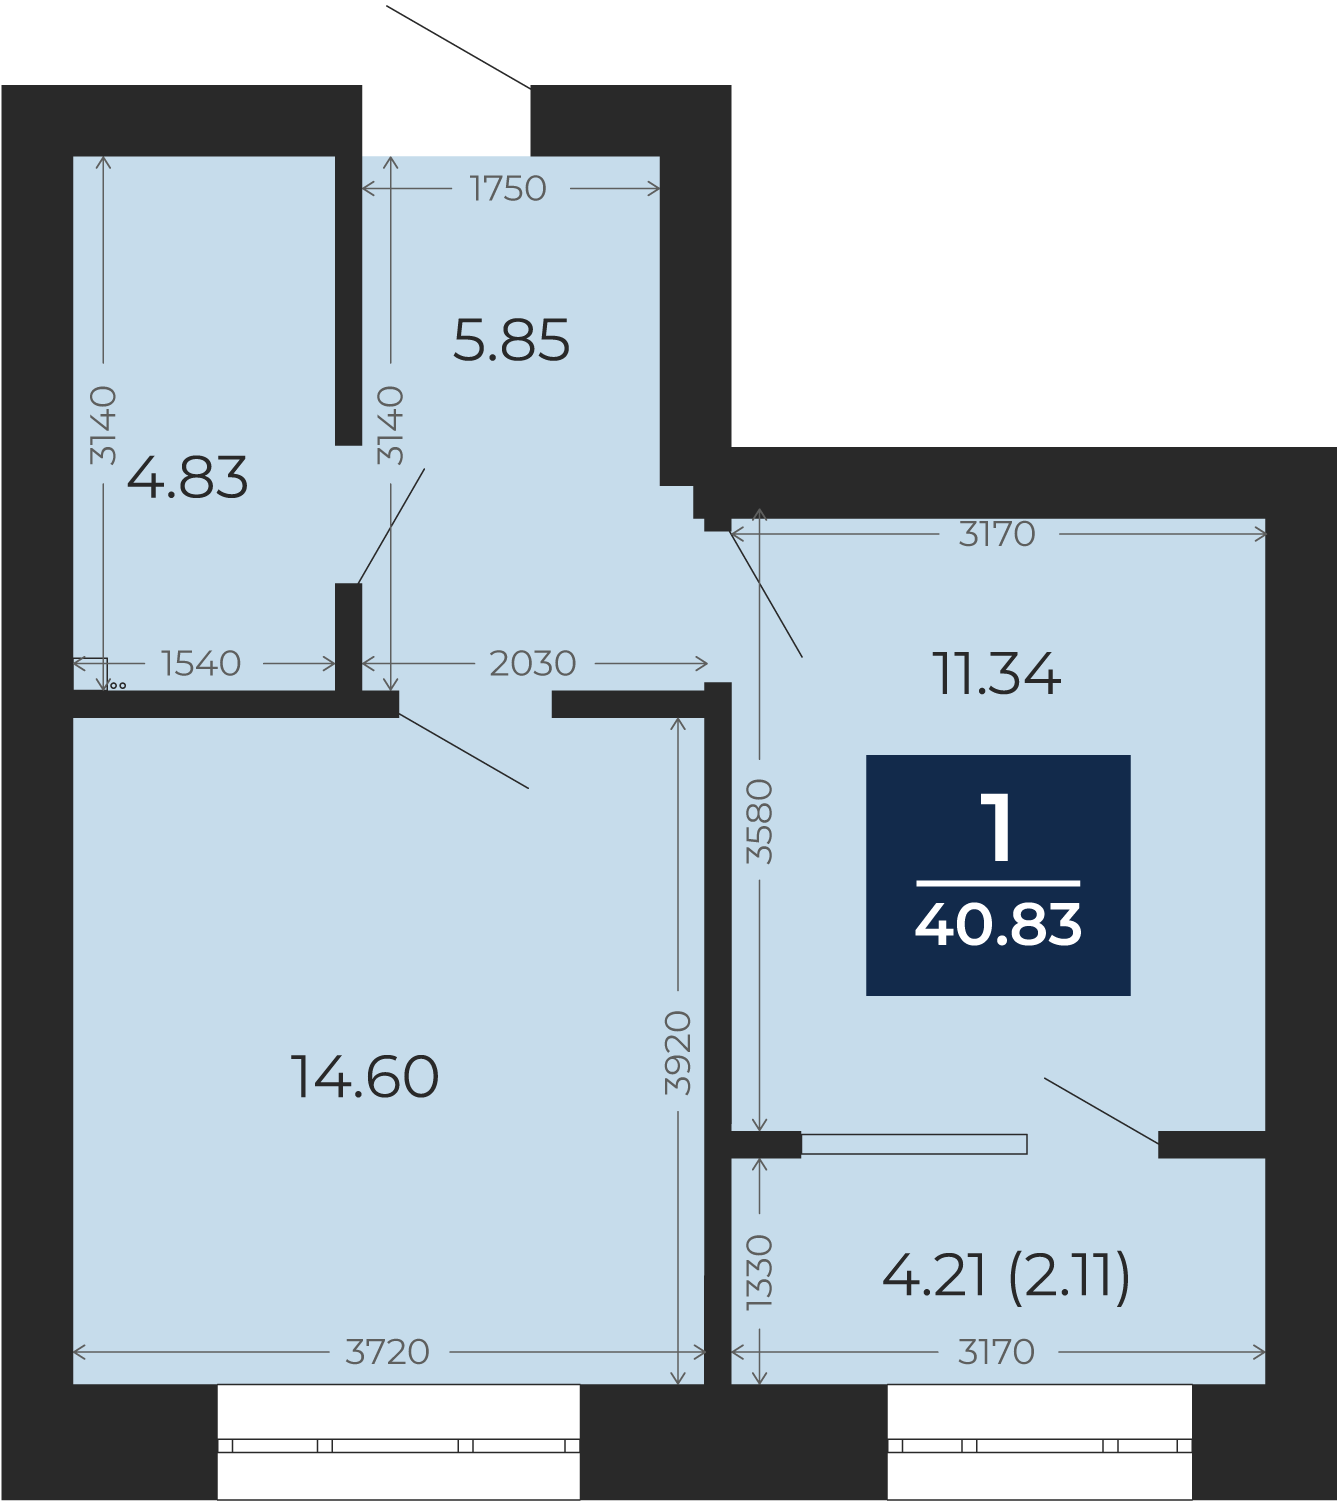 Квартира № 147, 1-комнатная, 40.83 кв. м, 5 этаж